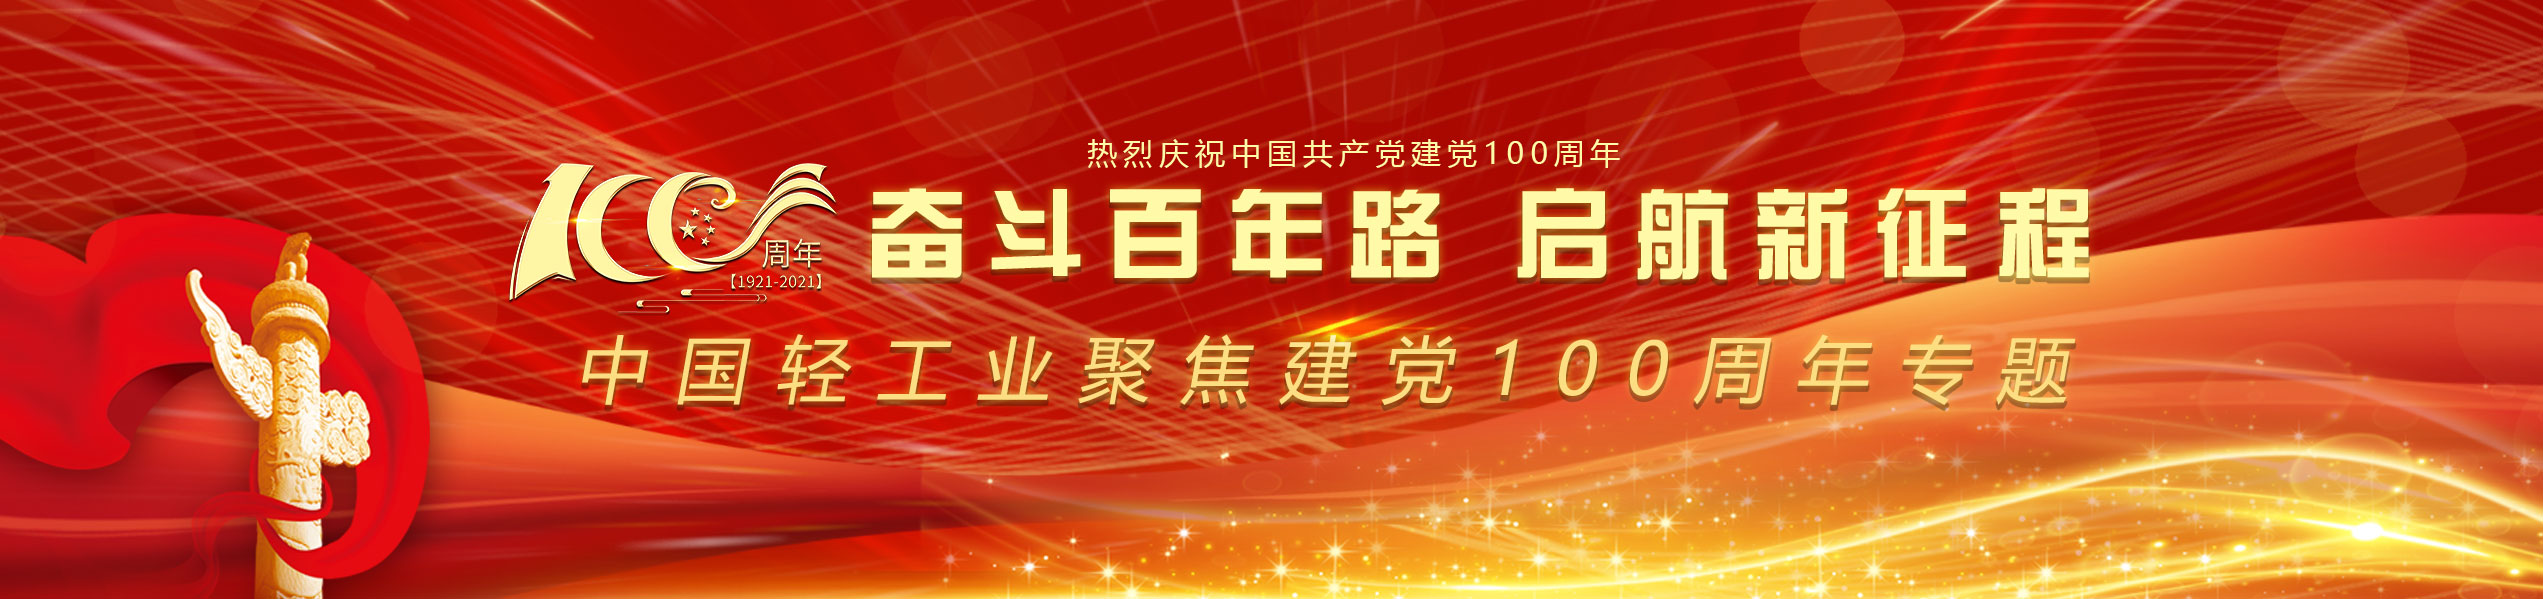 中国轻工业聚焦建党100周年专题